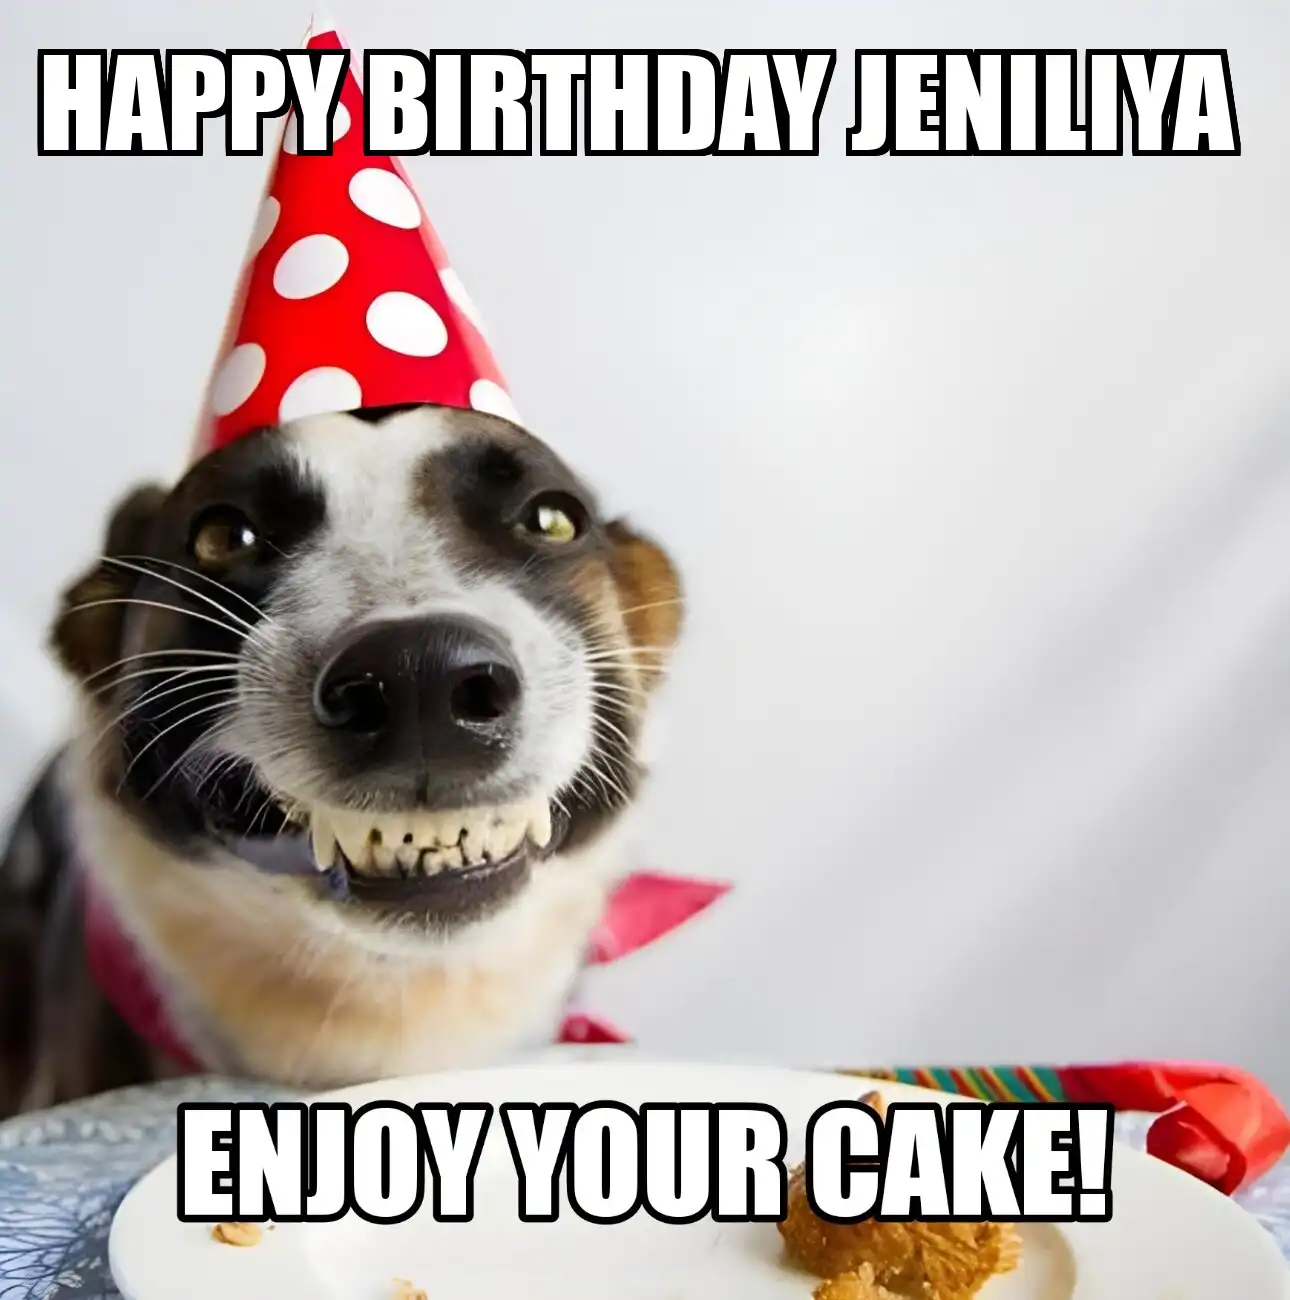 Happy Birthday Jeniliya Enjoy Your Cake Dog Meme